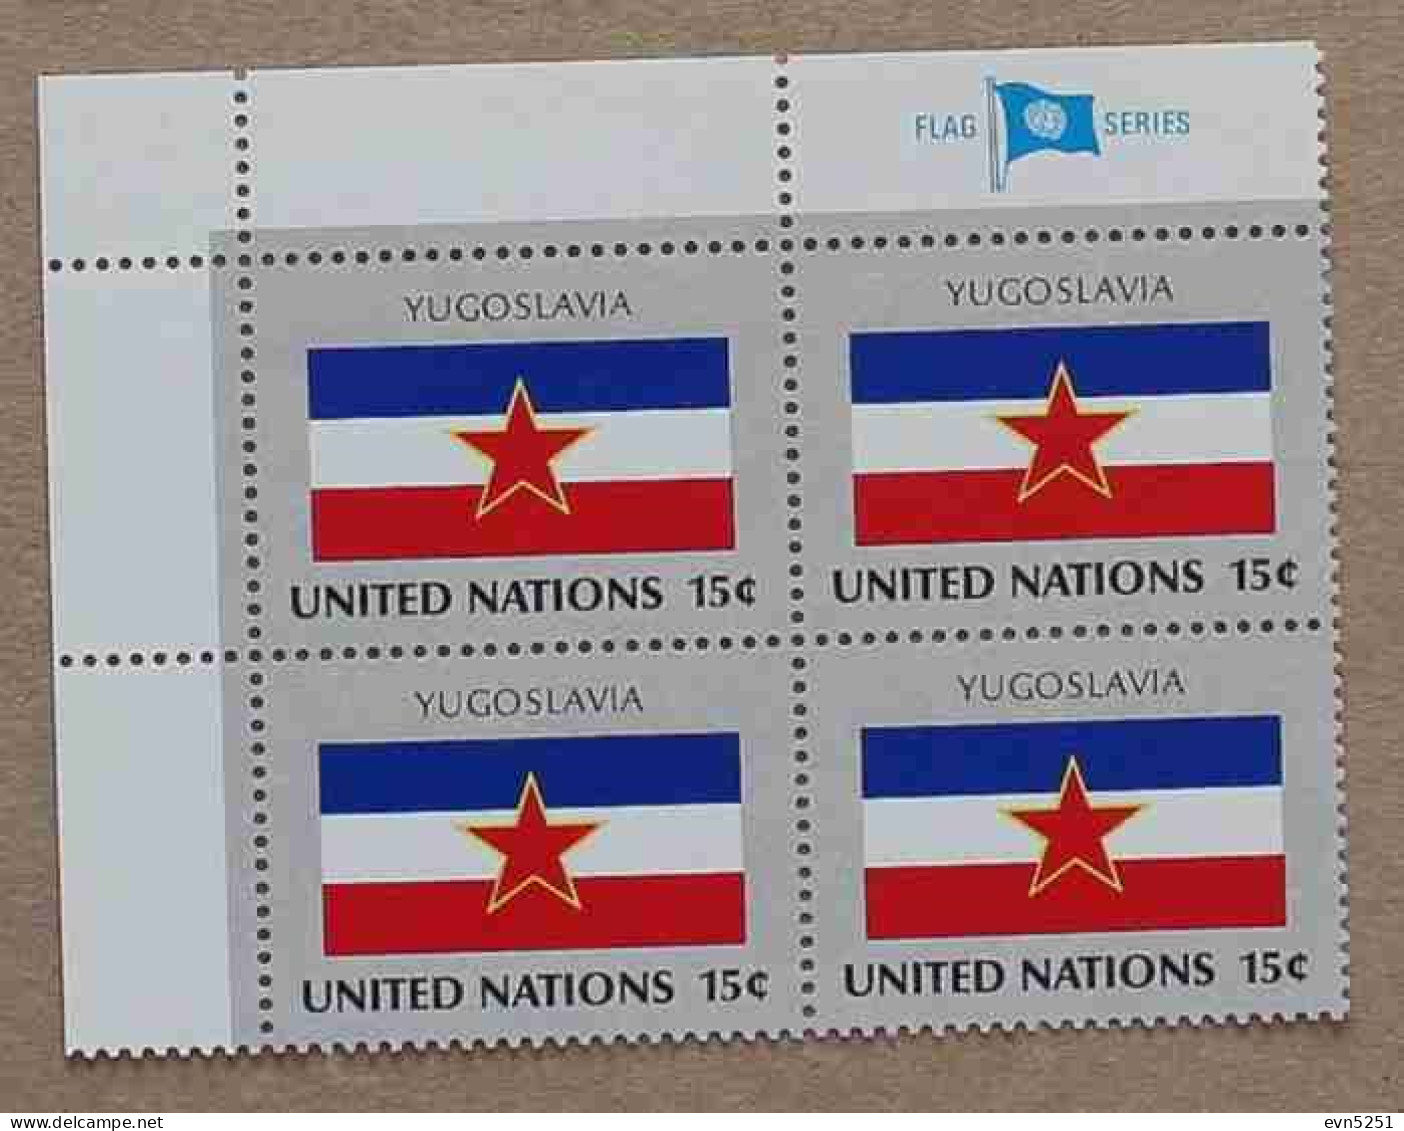 Ny80-02 : Nations-Unies (N-Y) - Drapeaux Des Etats Membres De L'ONU, Yougoslavie Avec Une Vignette "FLAG SERIES" - Neufs